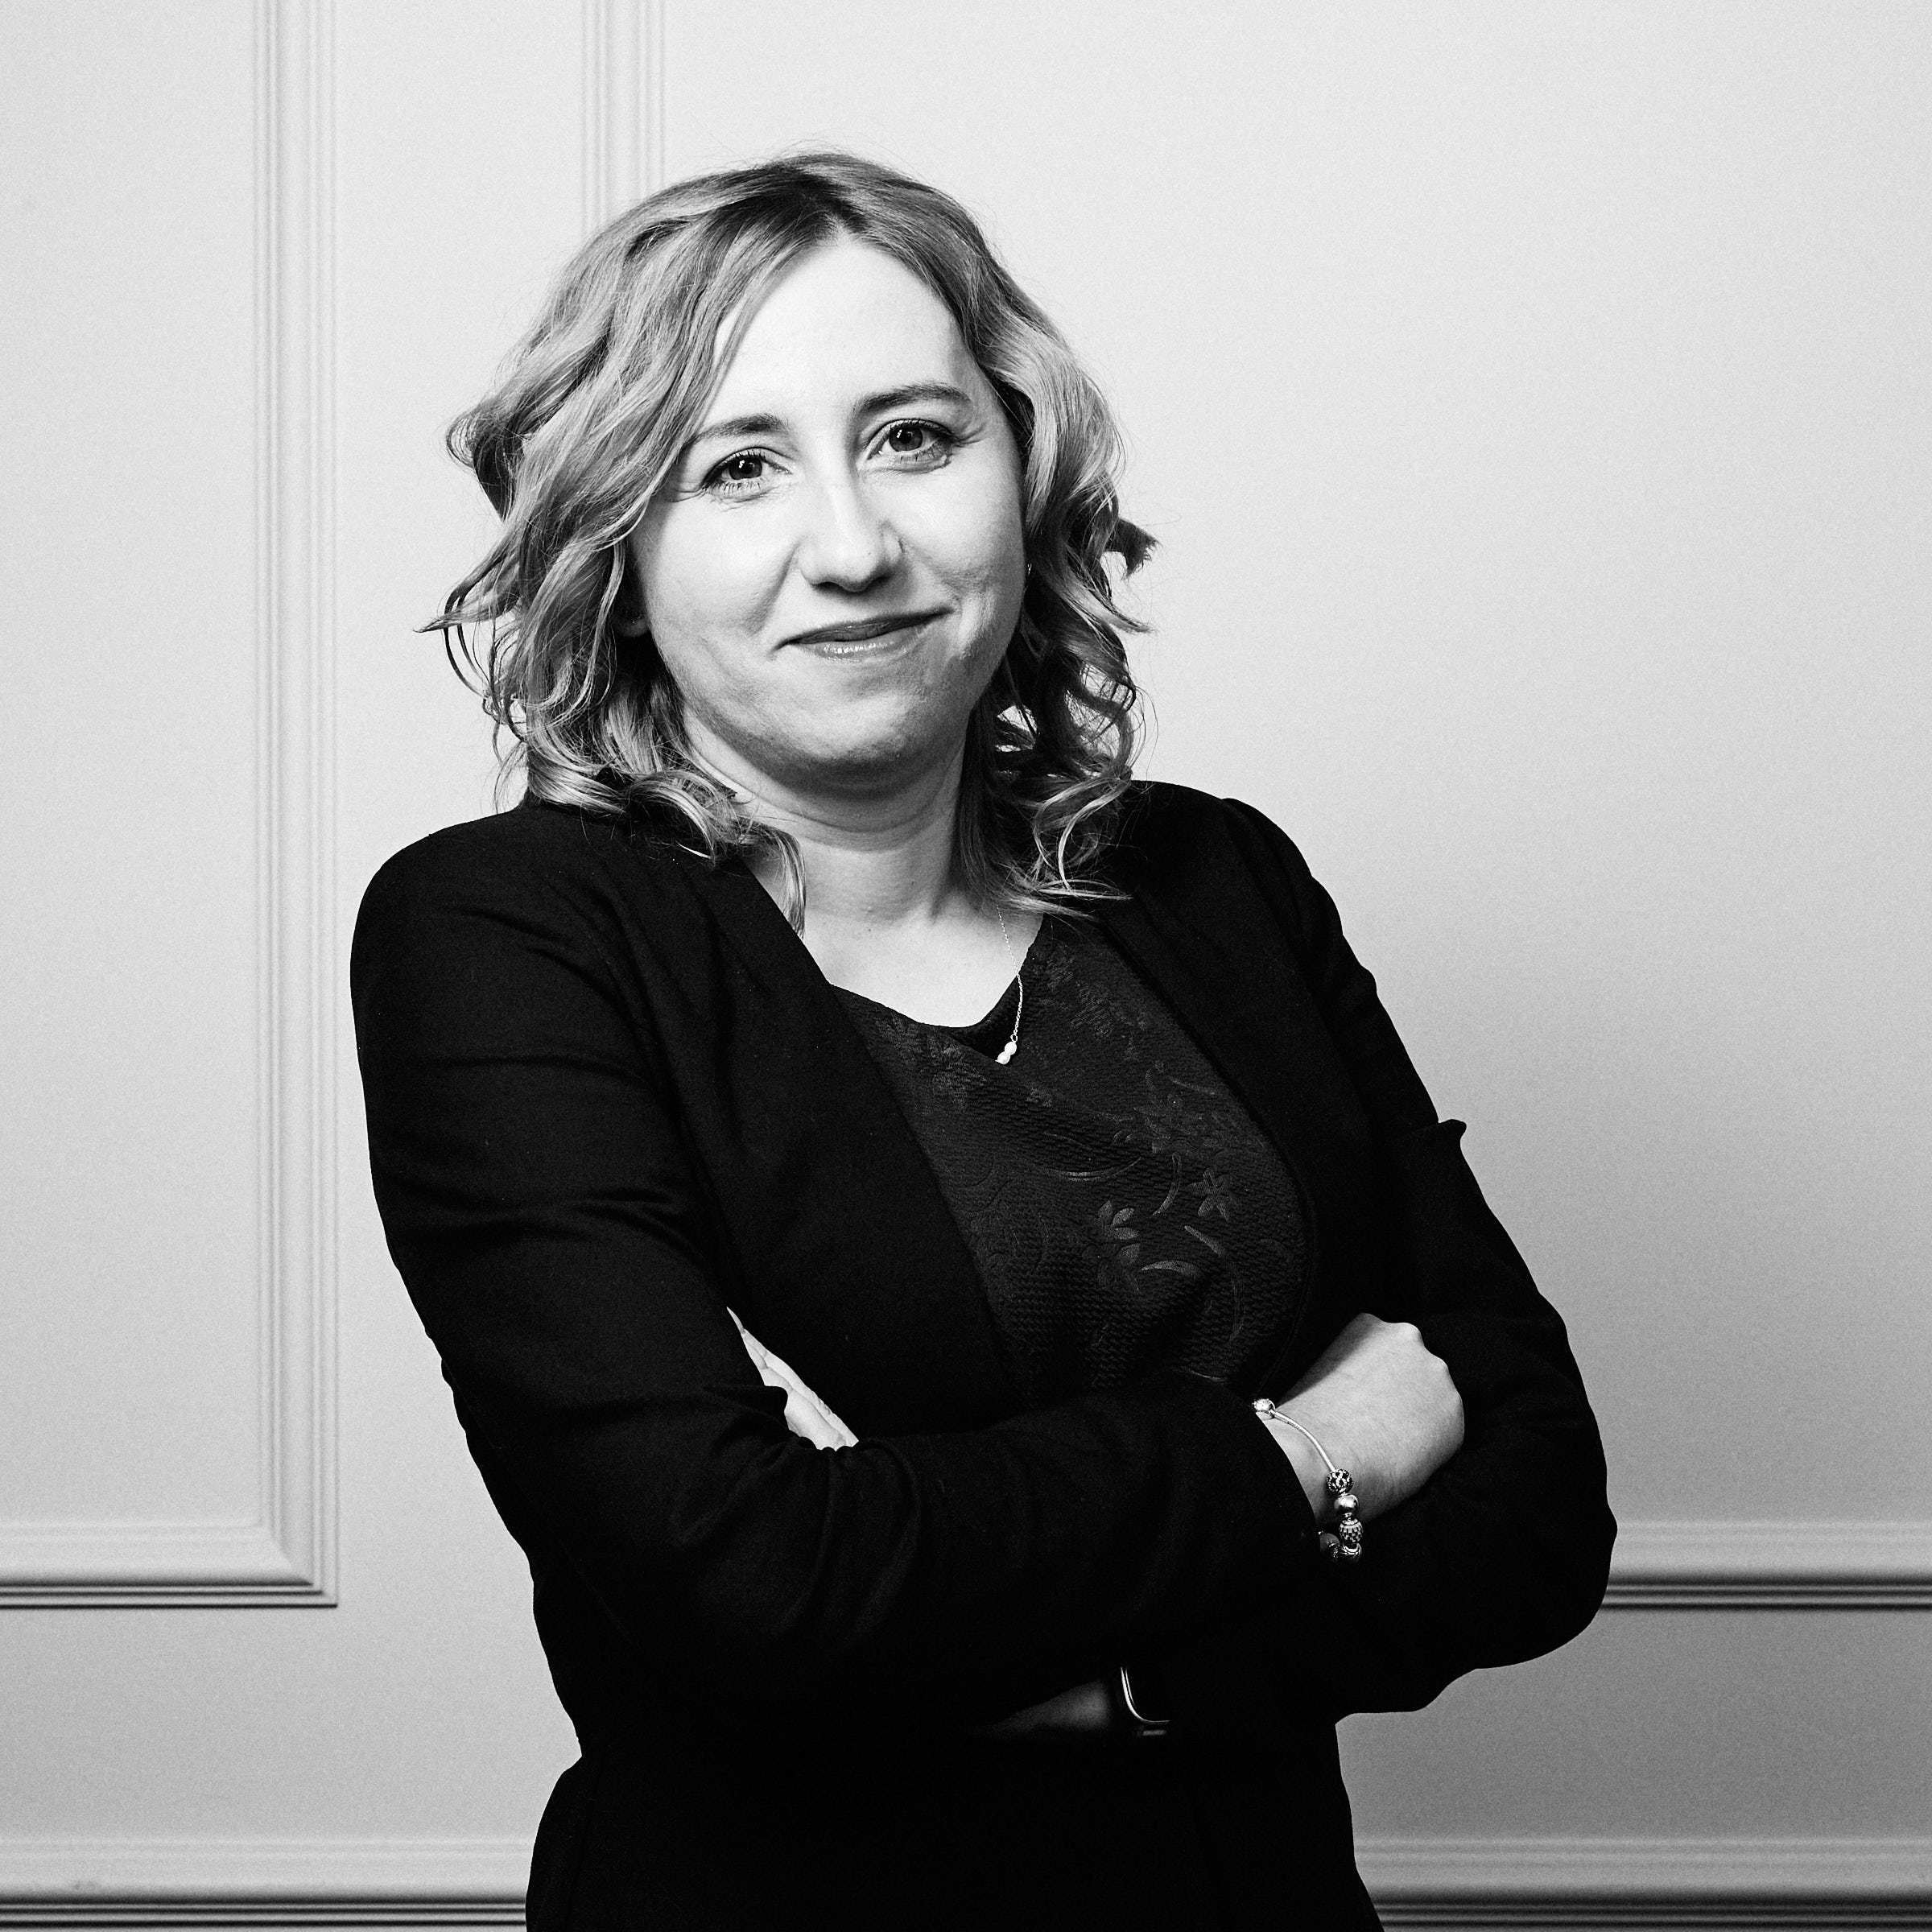 Agnieszka Koperska - Attorney at law